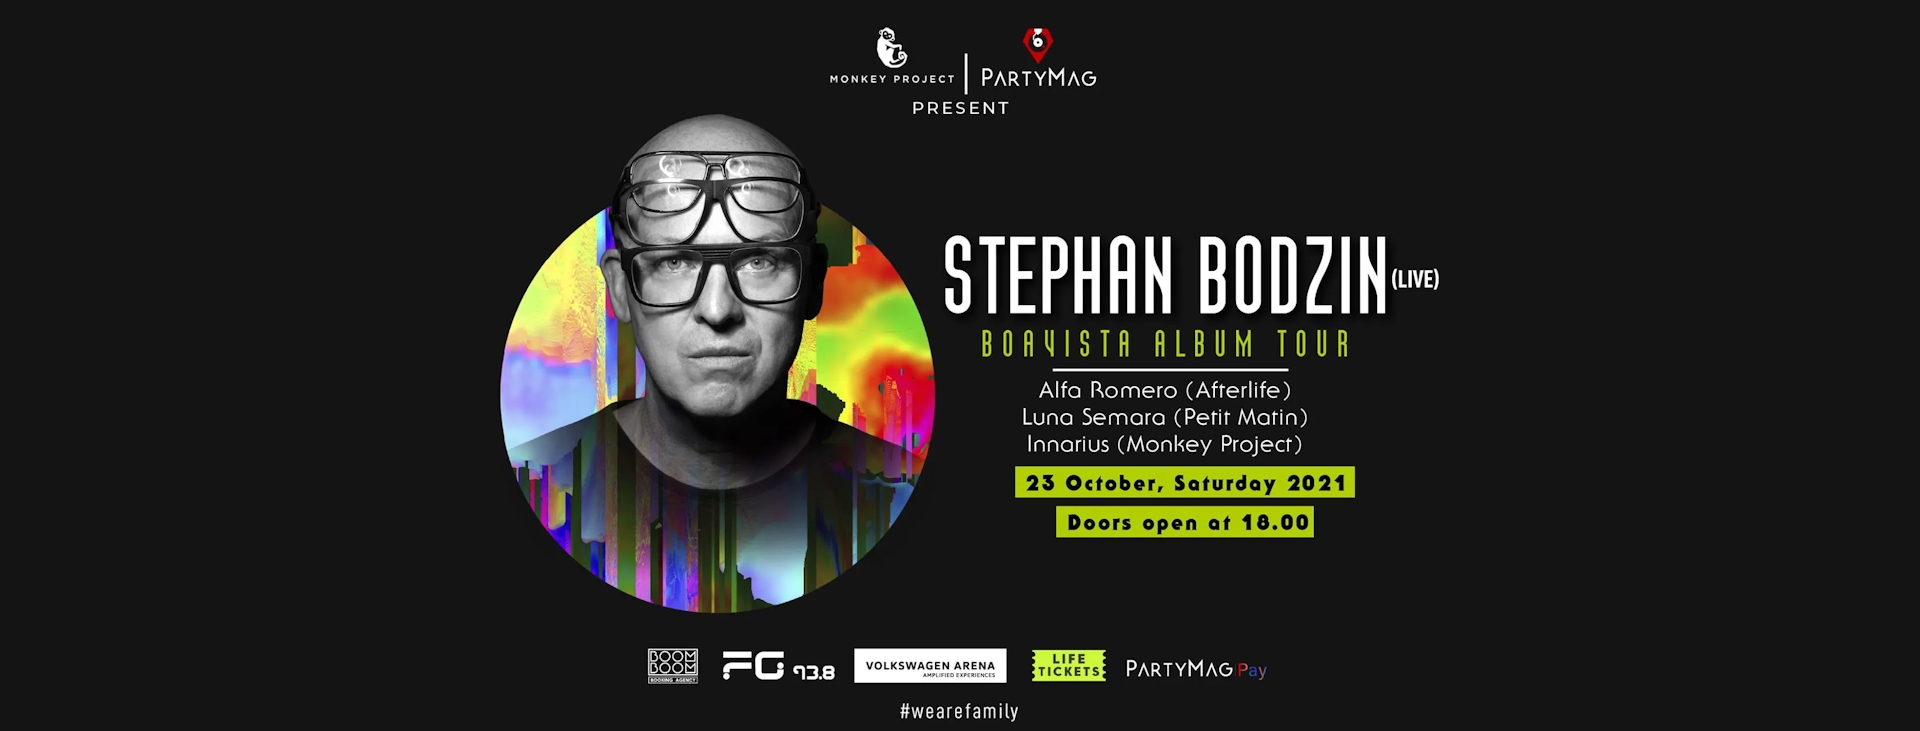 Stephan Bodzin - Boavista Album Tour